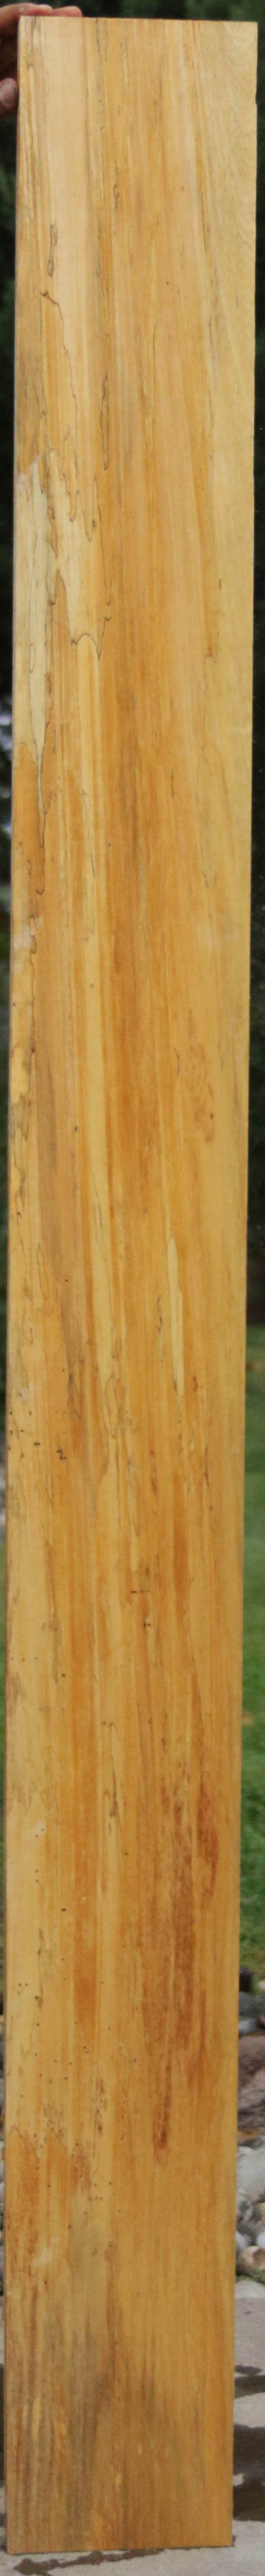 Spalted Jobillo Lumber